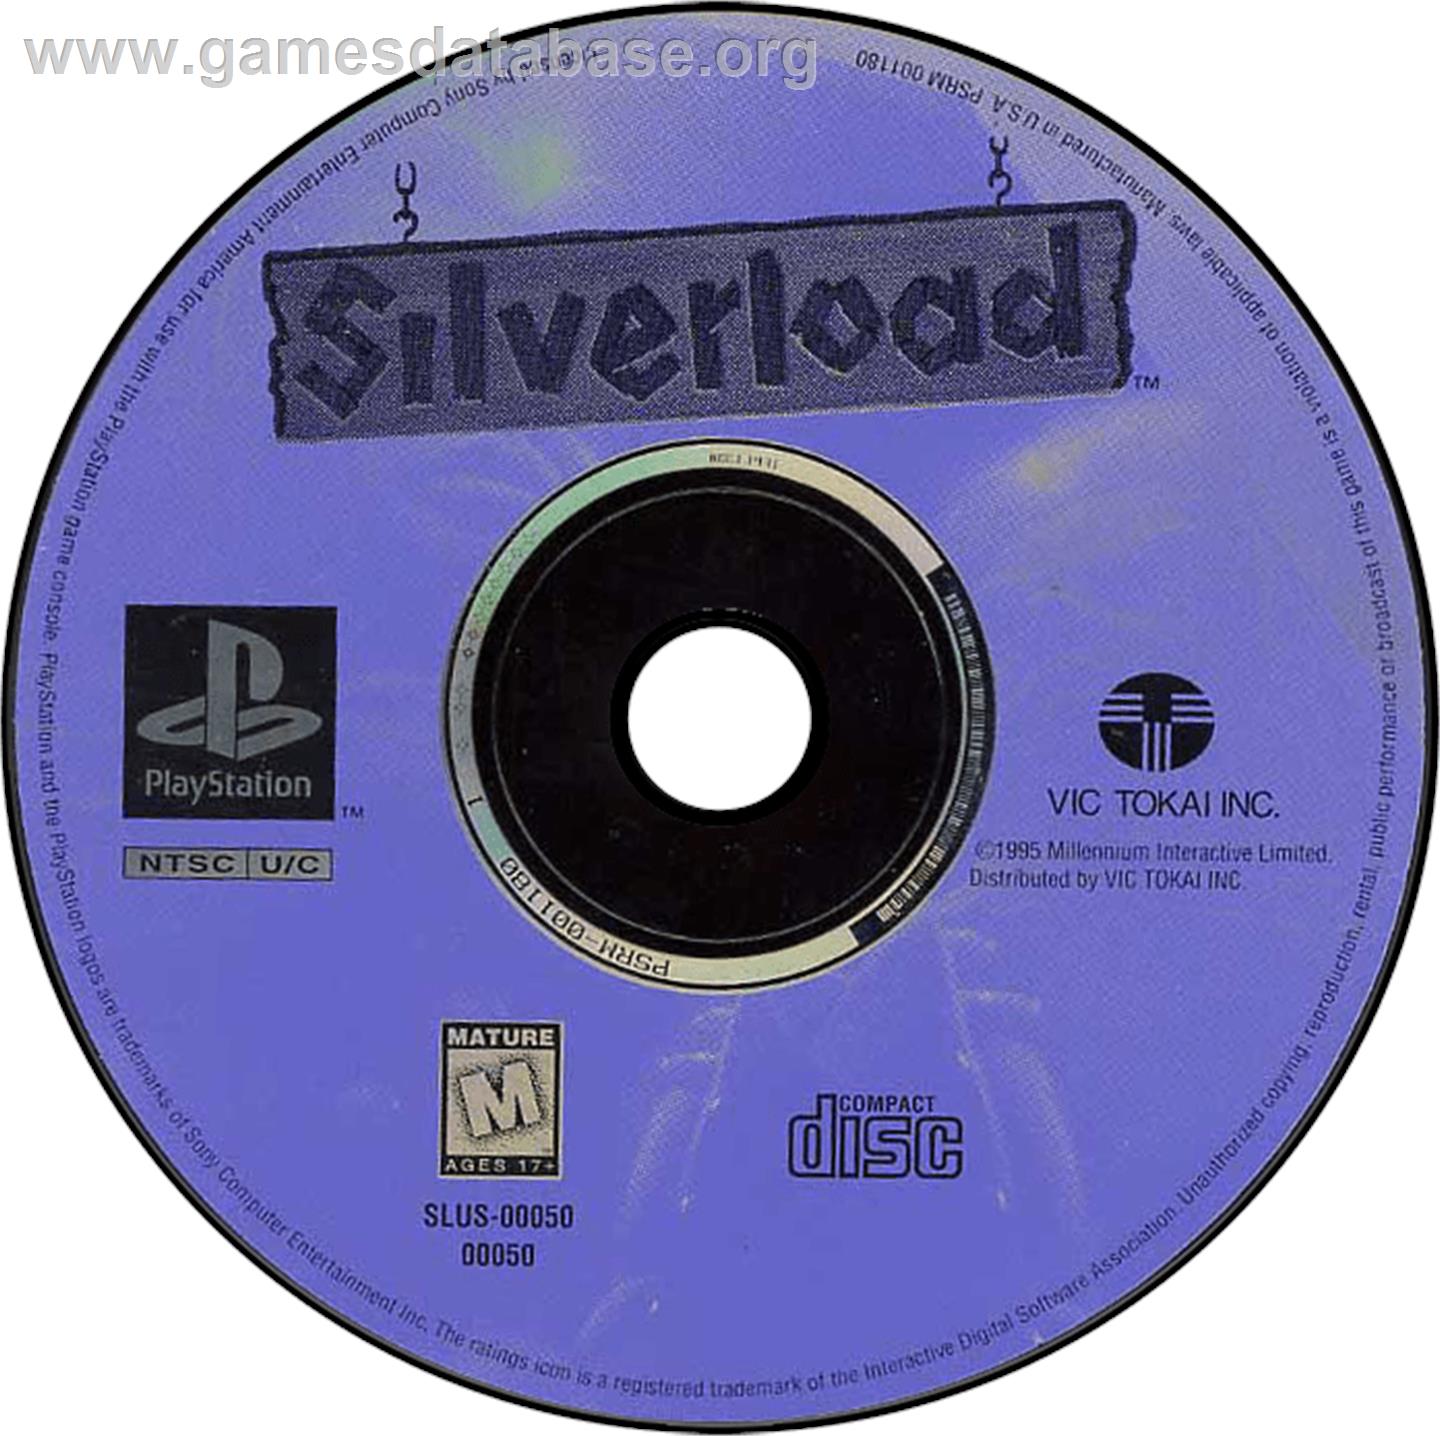 Silverload - Sony Playstation - Artwork - Disc